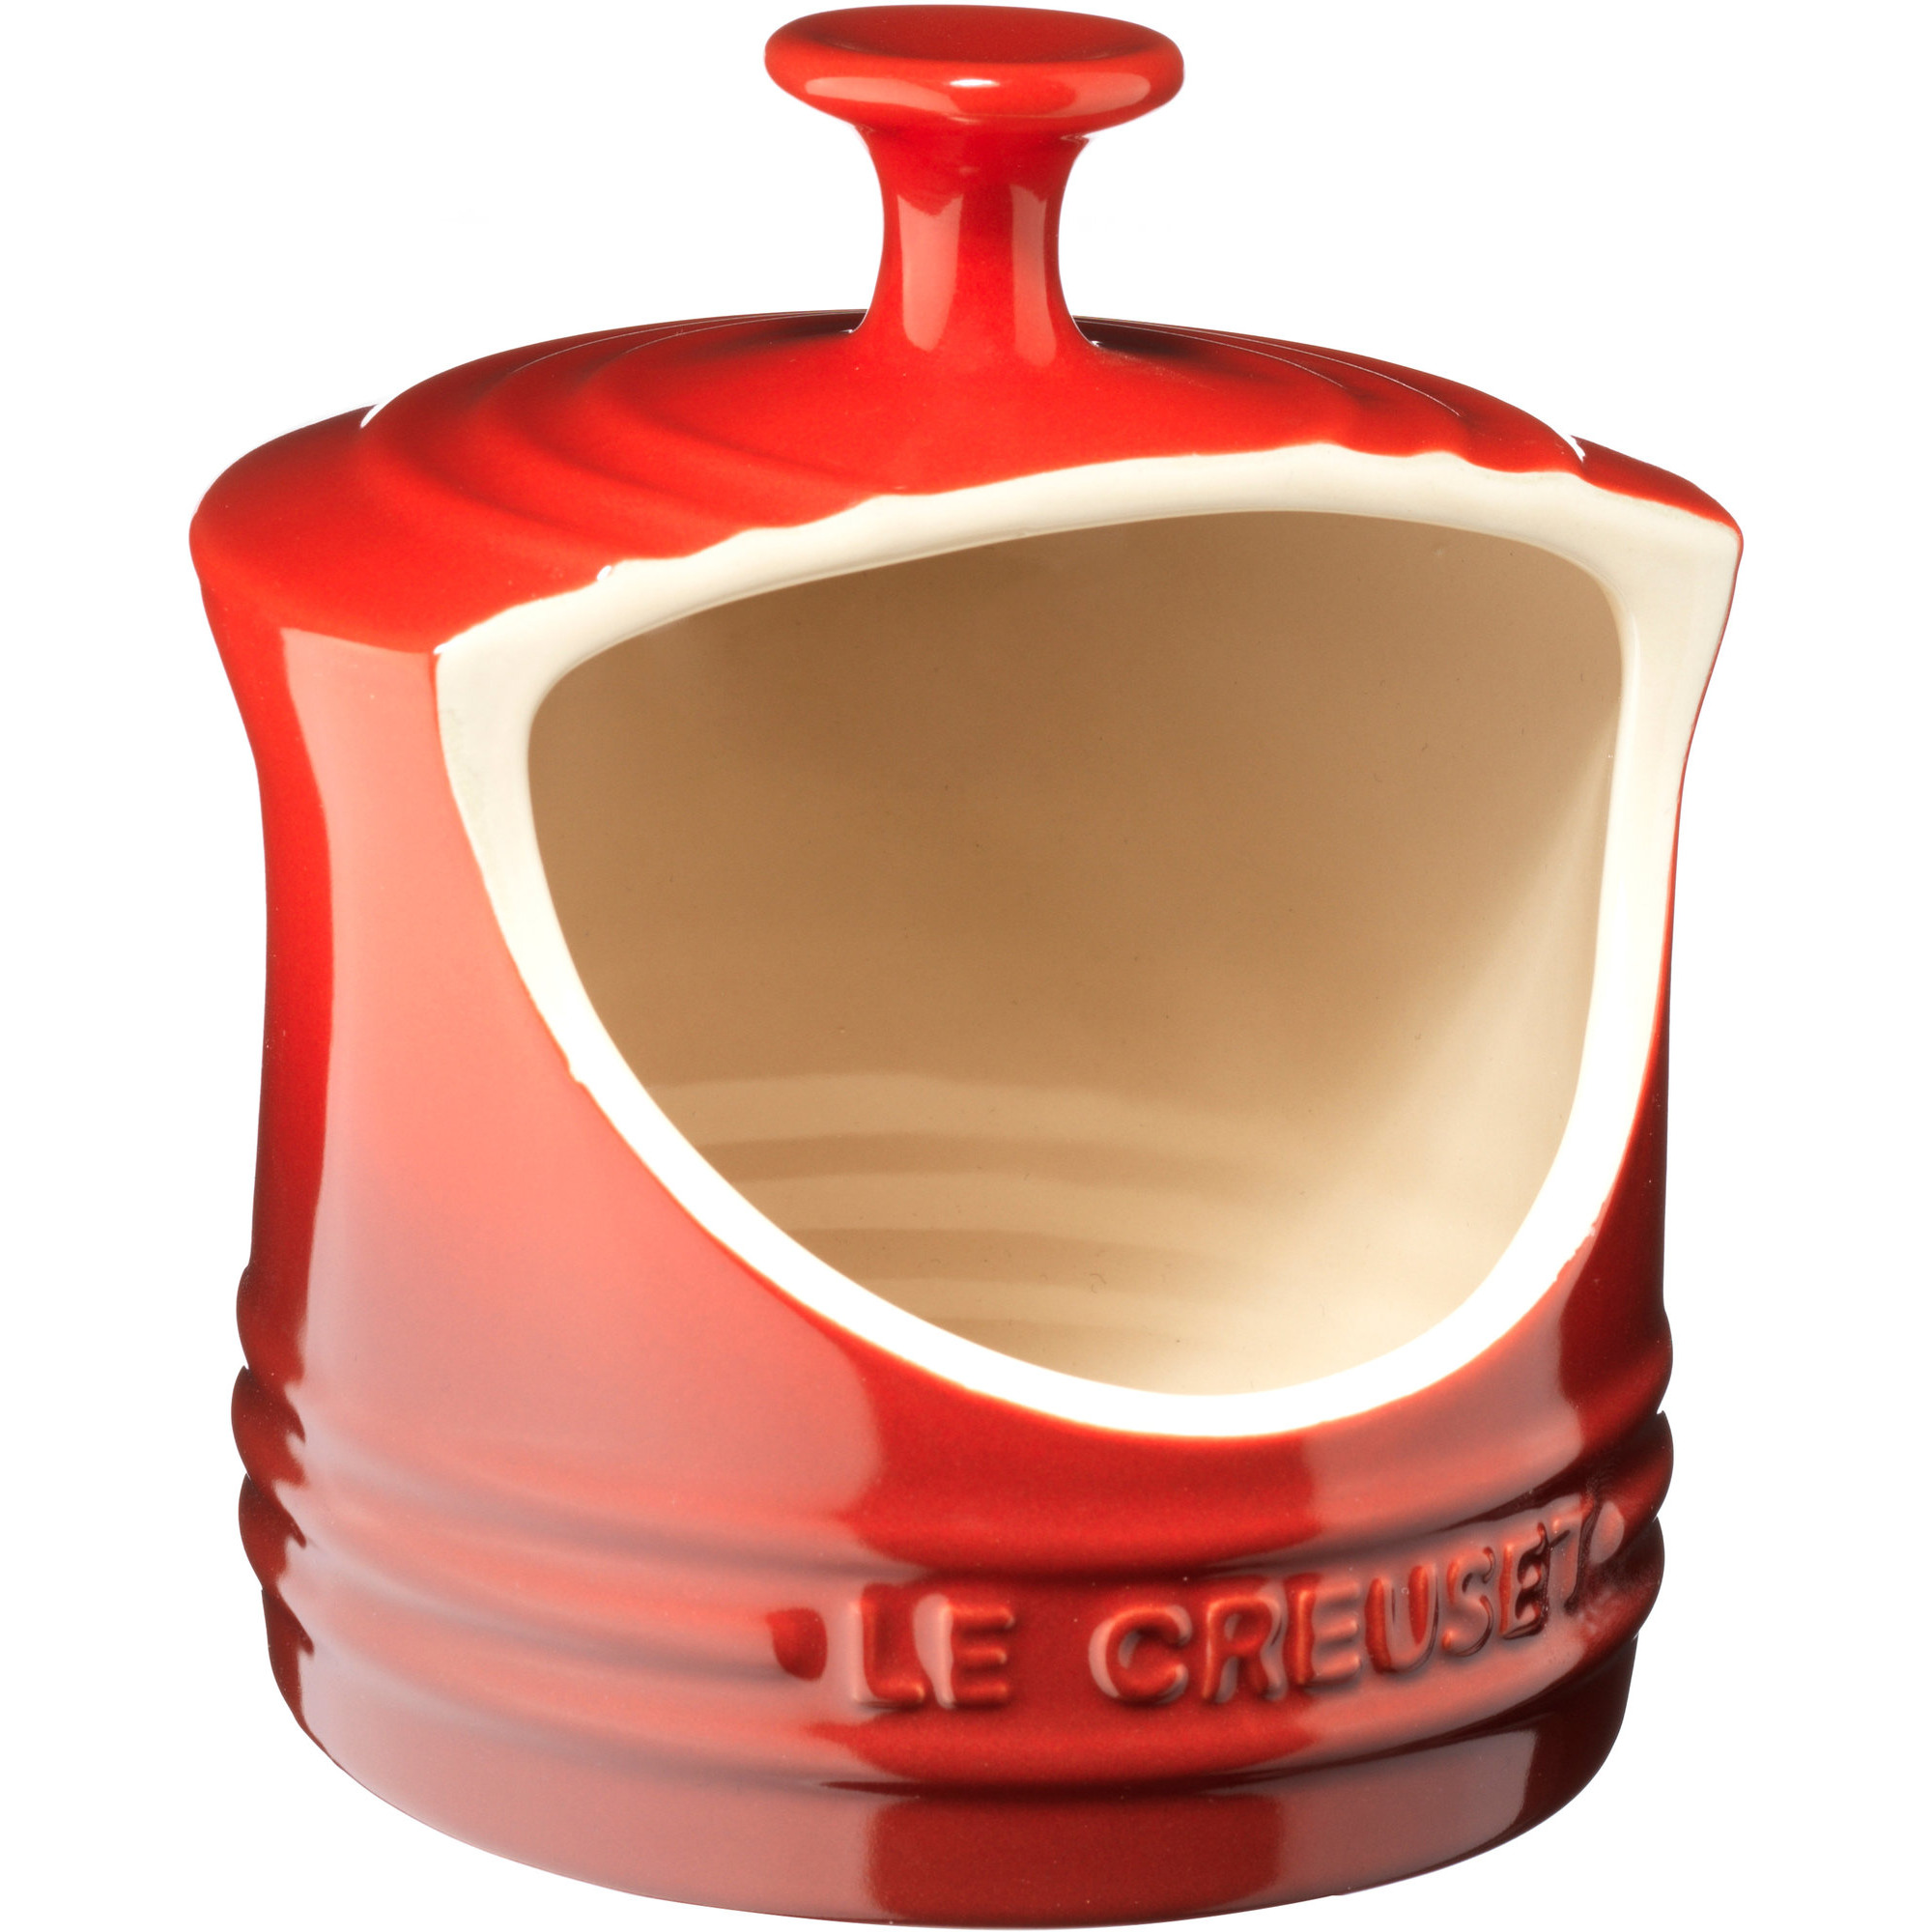 Saltkar fra Le Creuset Fås i velkendte Le Creuset farver